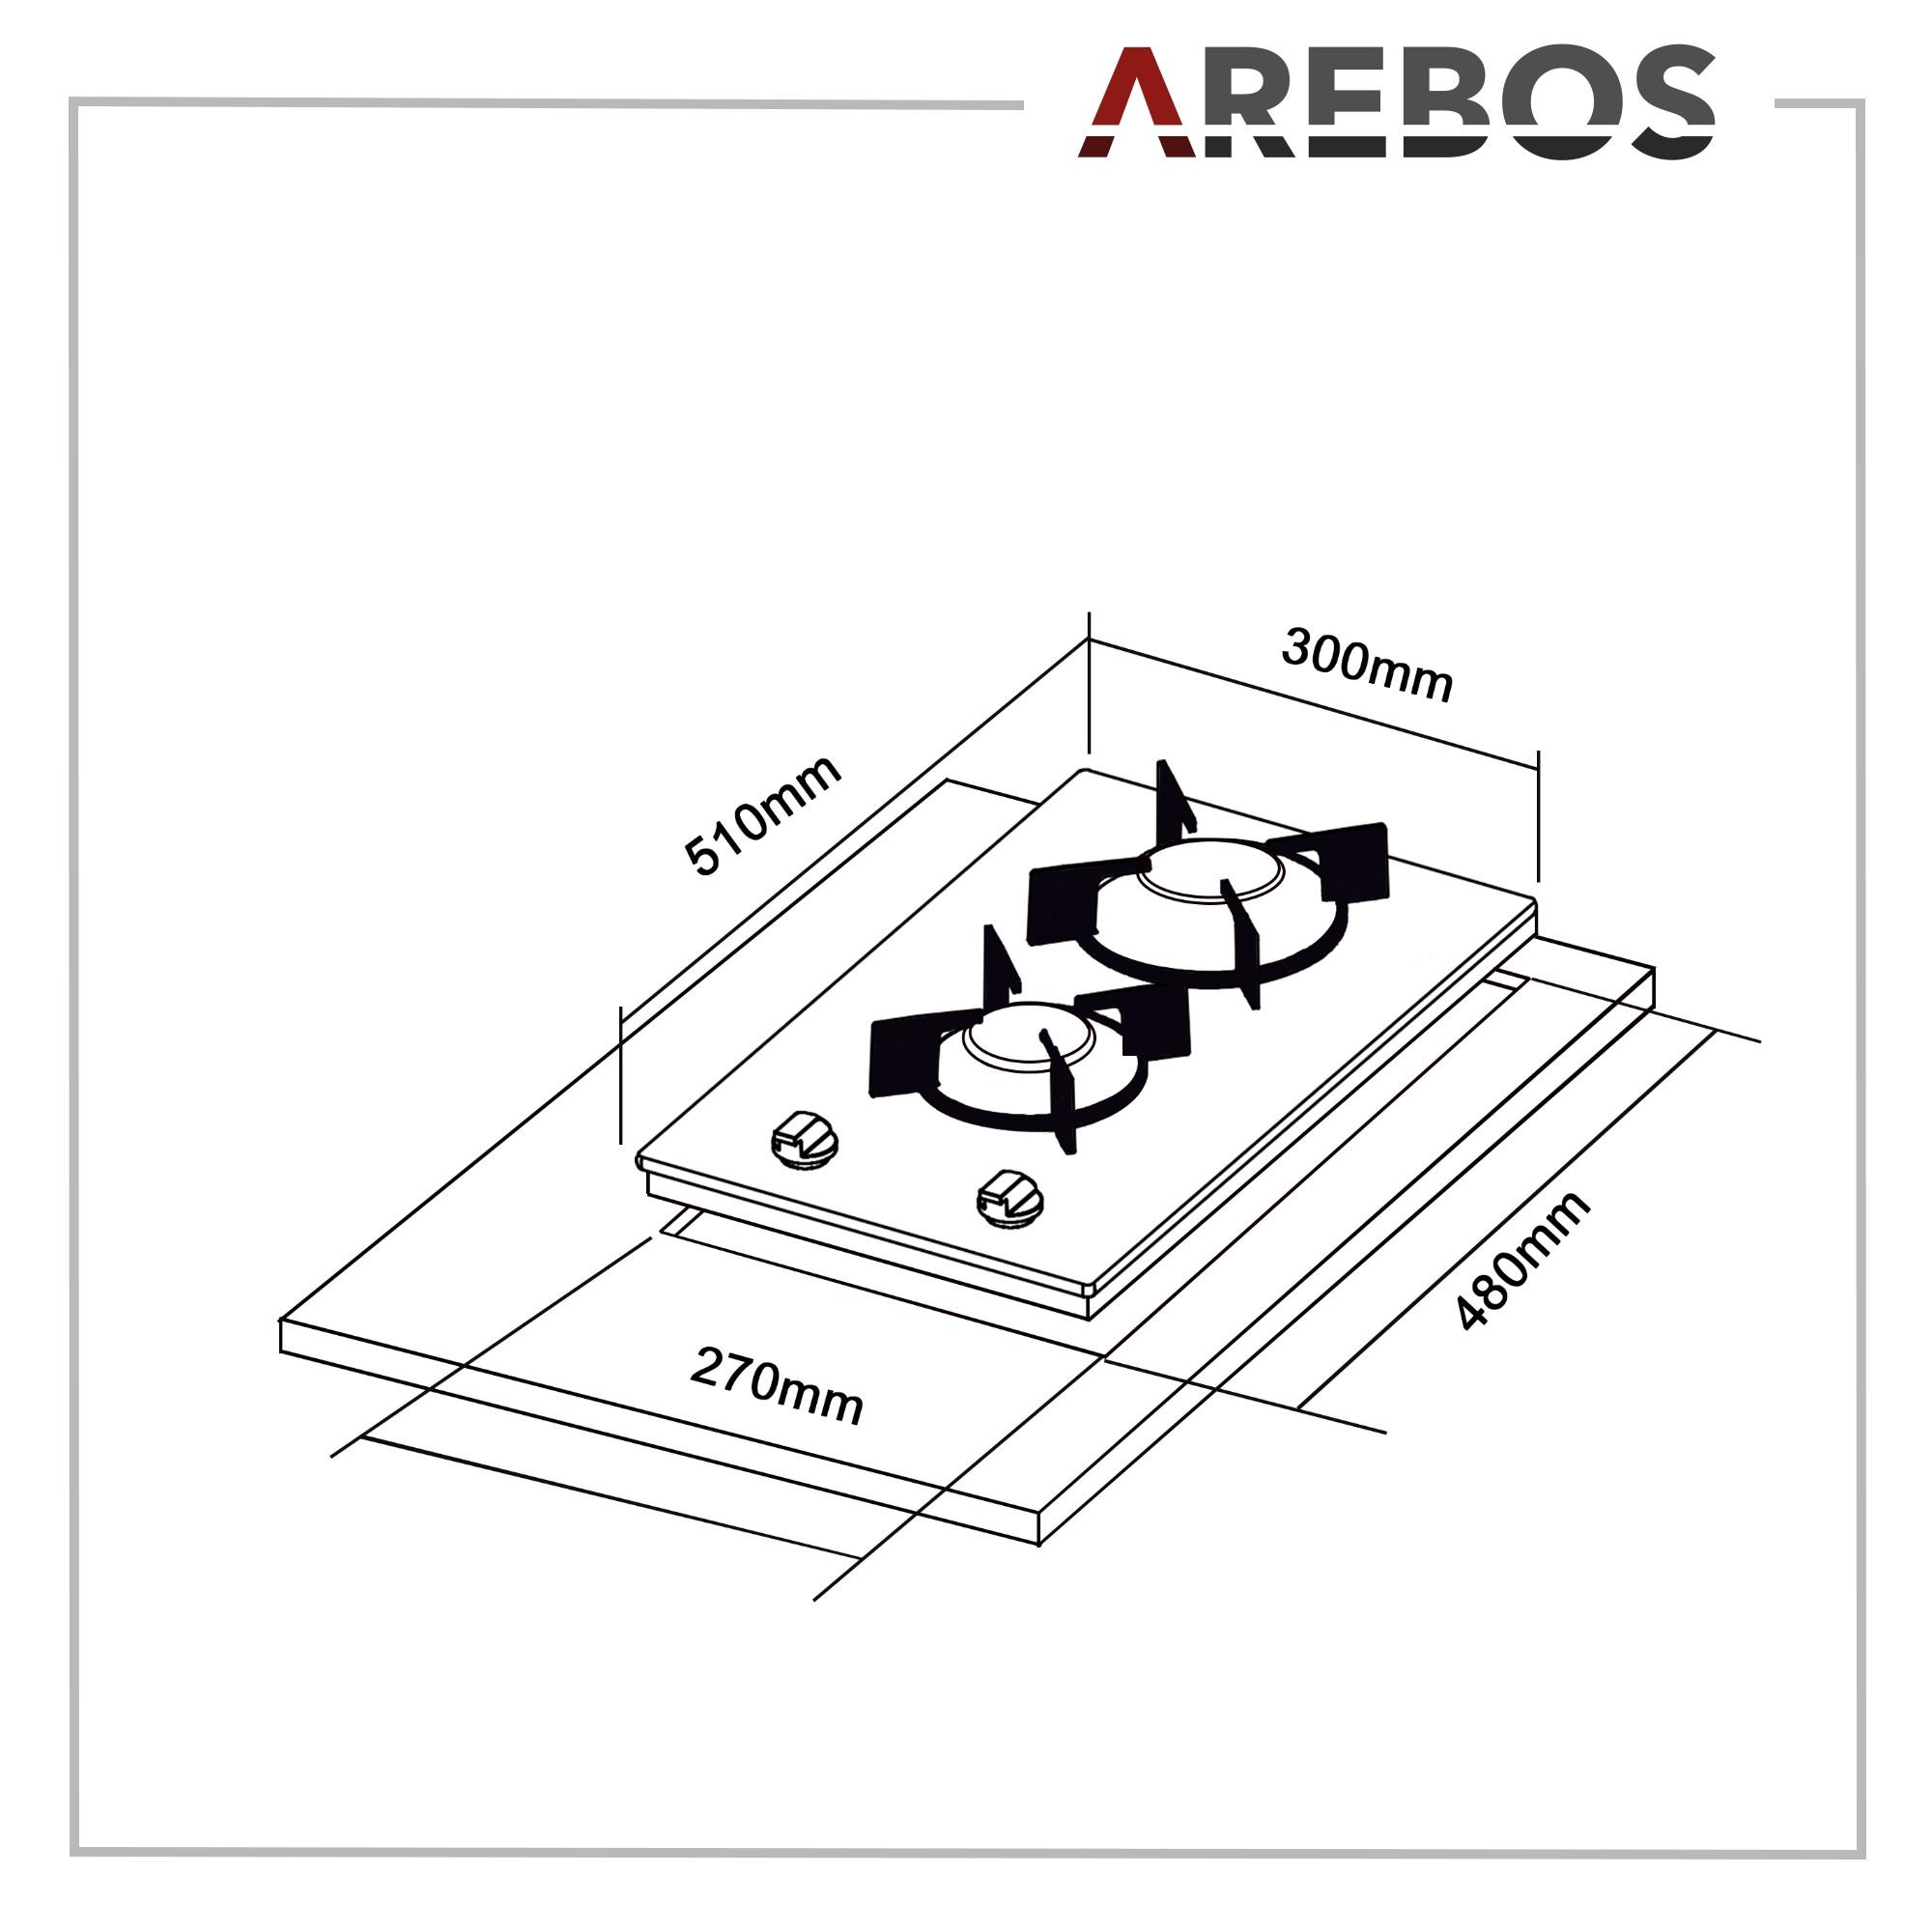 Arebos Gaskochfeld 2 Flammen | Glaskeramik | inkl. Topfträger & Zündsicherung  